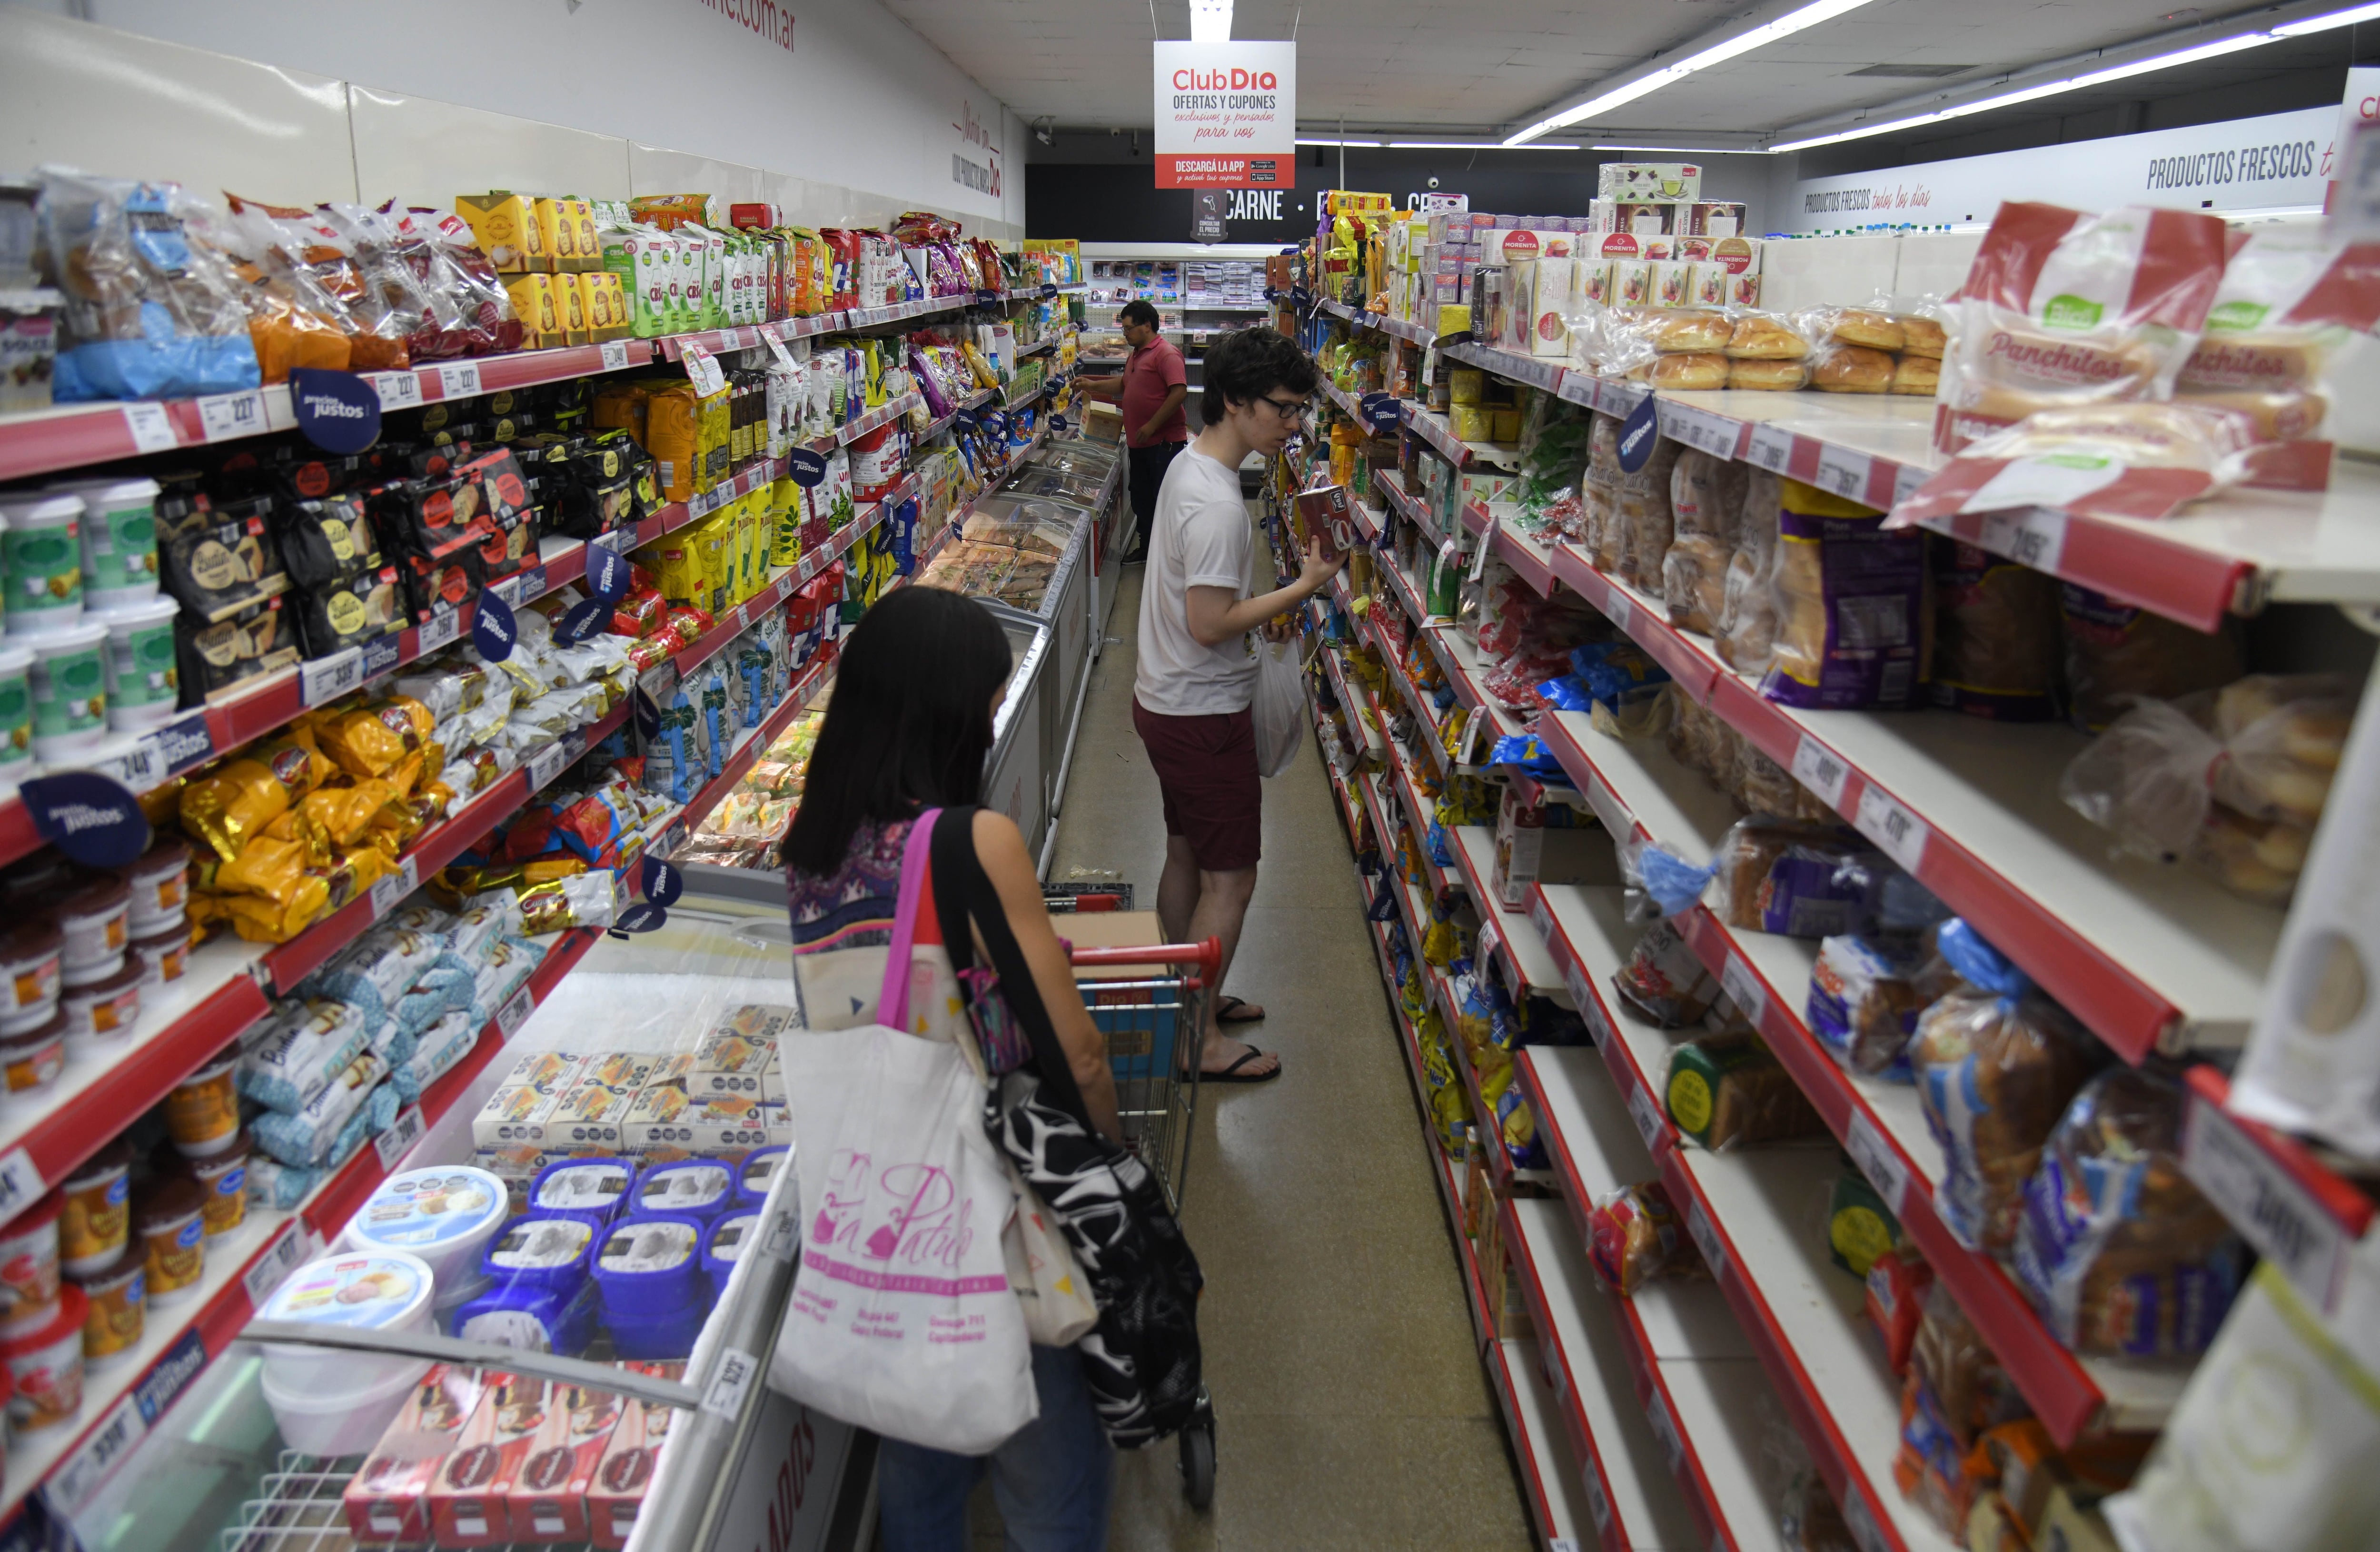 La categoría alimentos y bebidas, con un peso determinante en el IPC, habría registrado deflación según las mediciones de analistas privados que recaban datos de supermercados (EFE)
